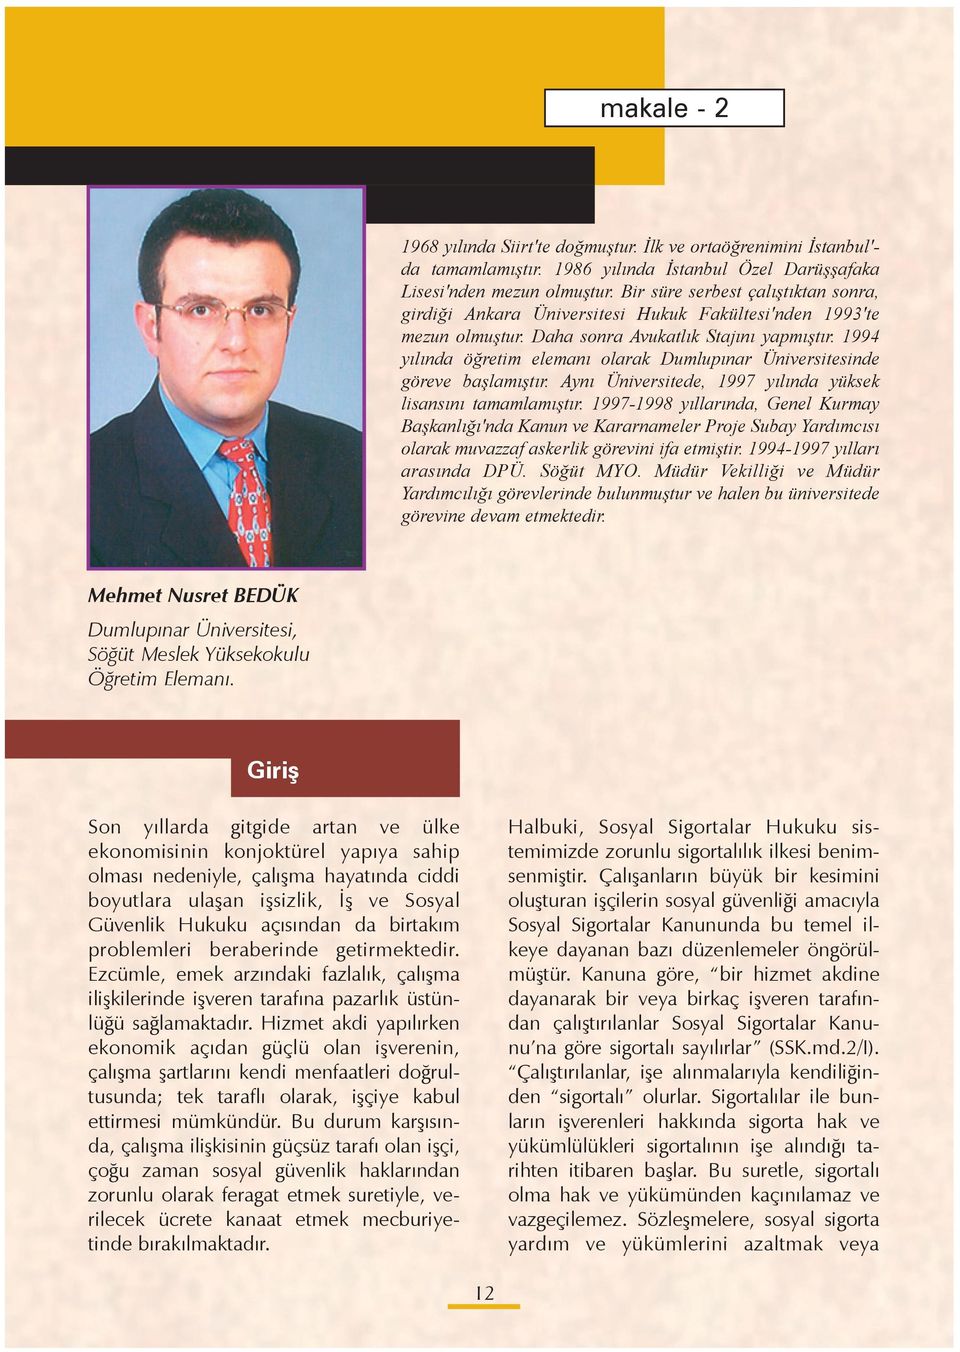 1994 yılında ö retim elemanı olarak Dumlupınar Üniversitesinde göreve ba lamı tır. Aynı Üniversitede, 1997 yılında yüksek lisansını tamamlamı tır.